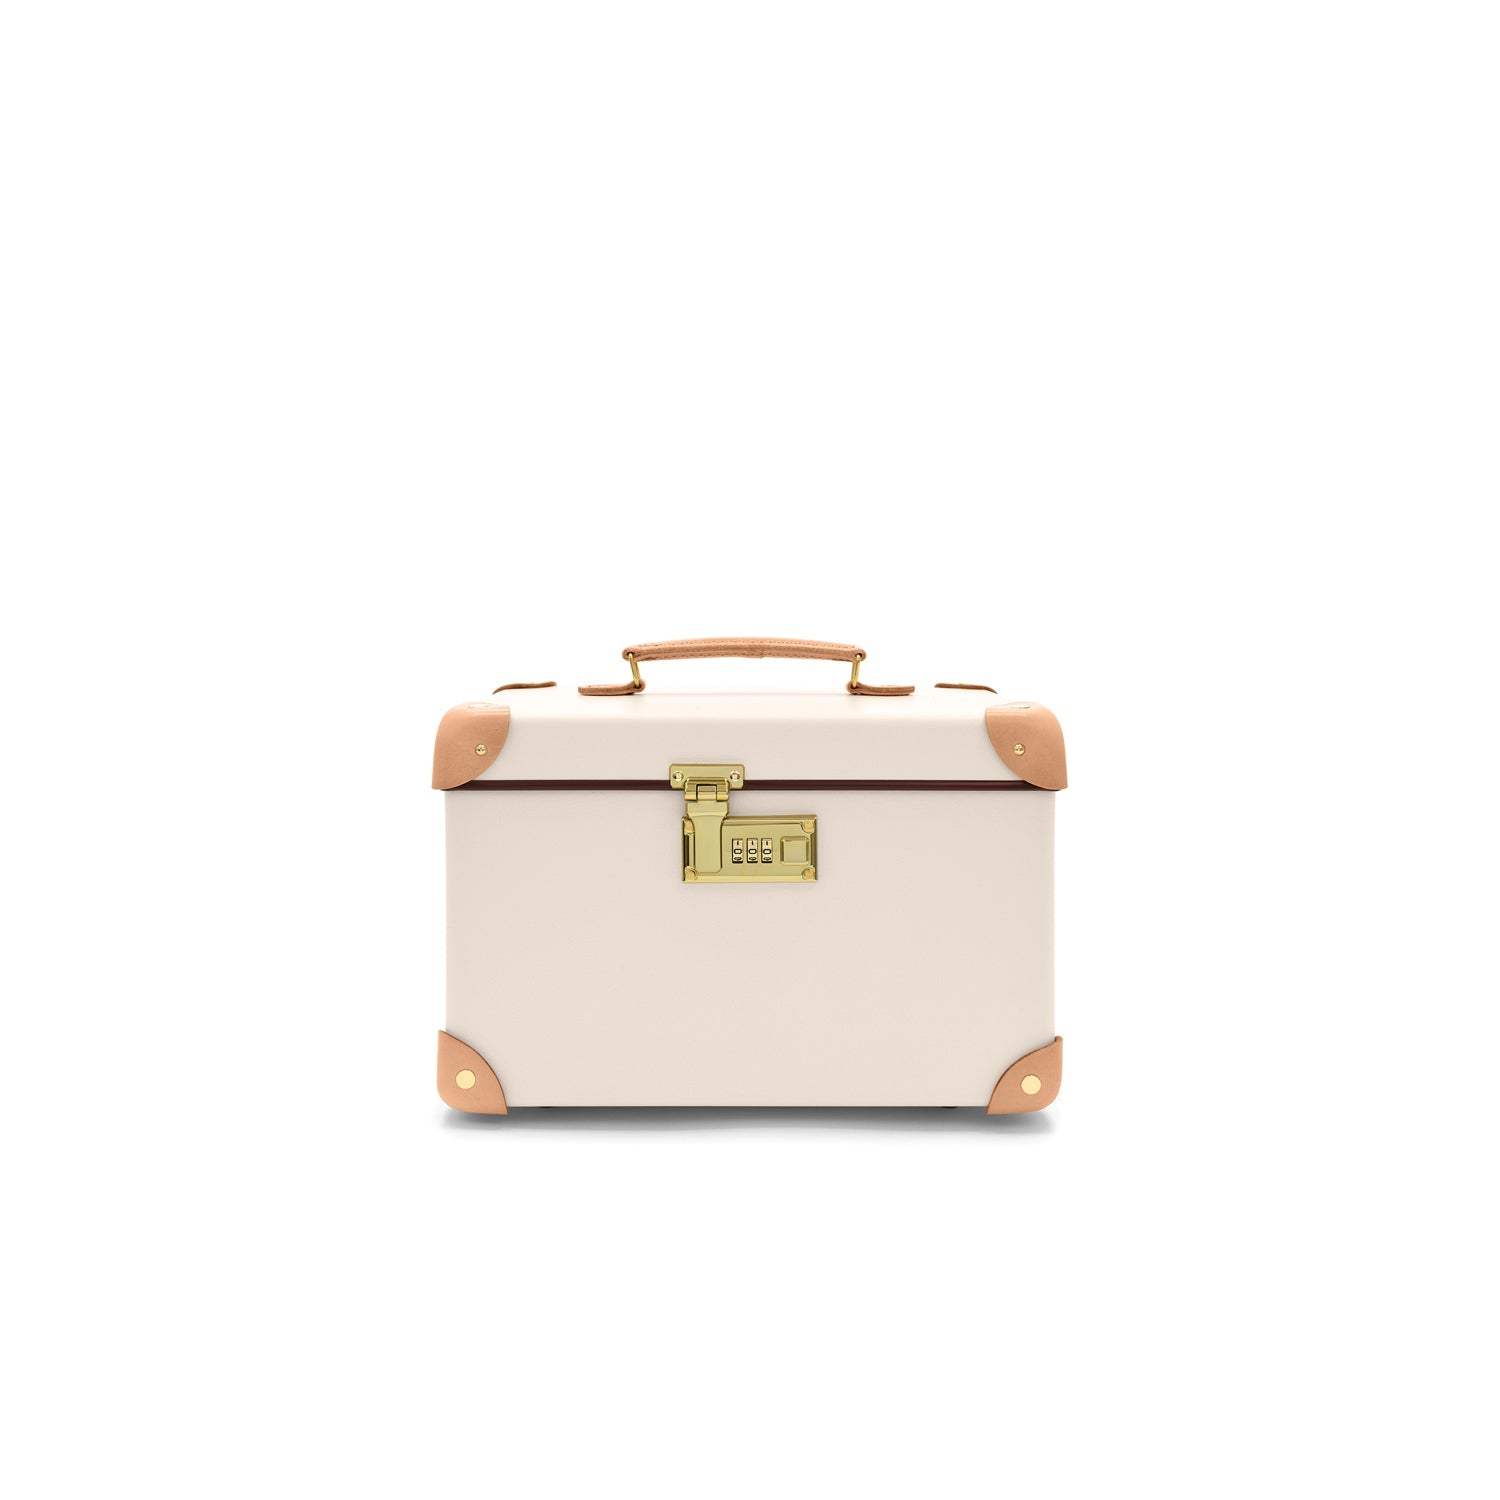 グローブトロッター サファリ カバー - 旅行用バッグ/キャリーバッグ